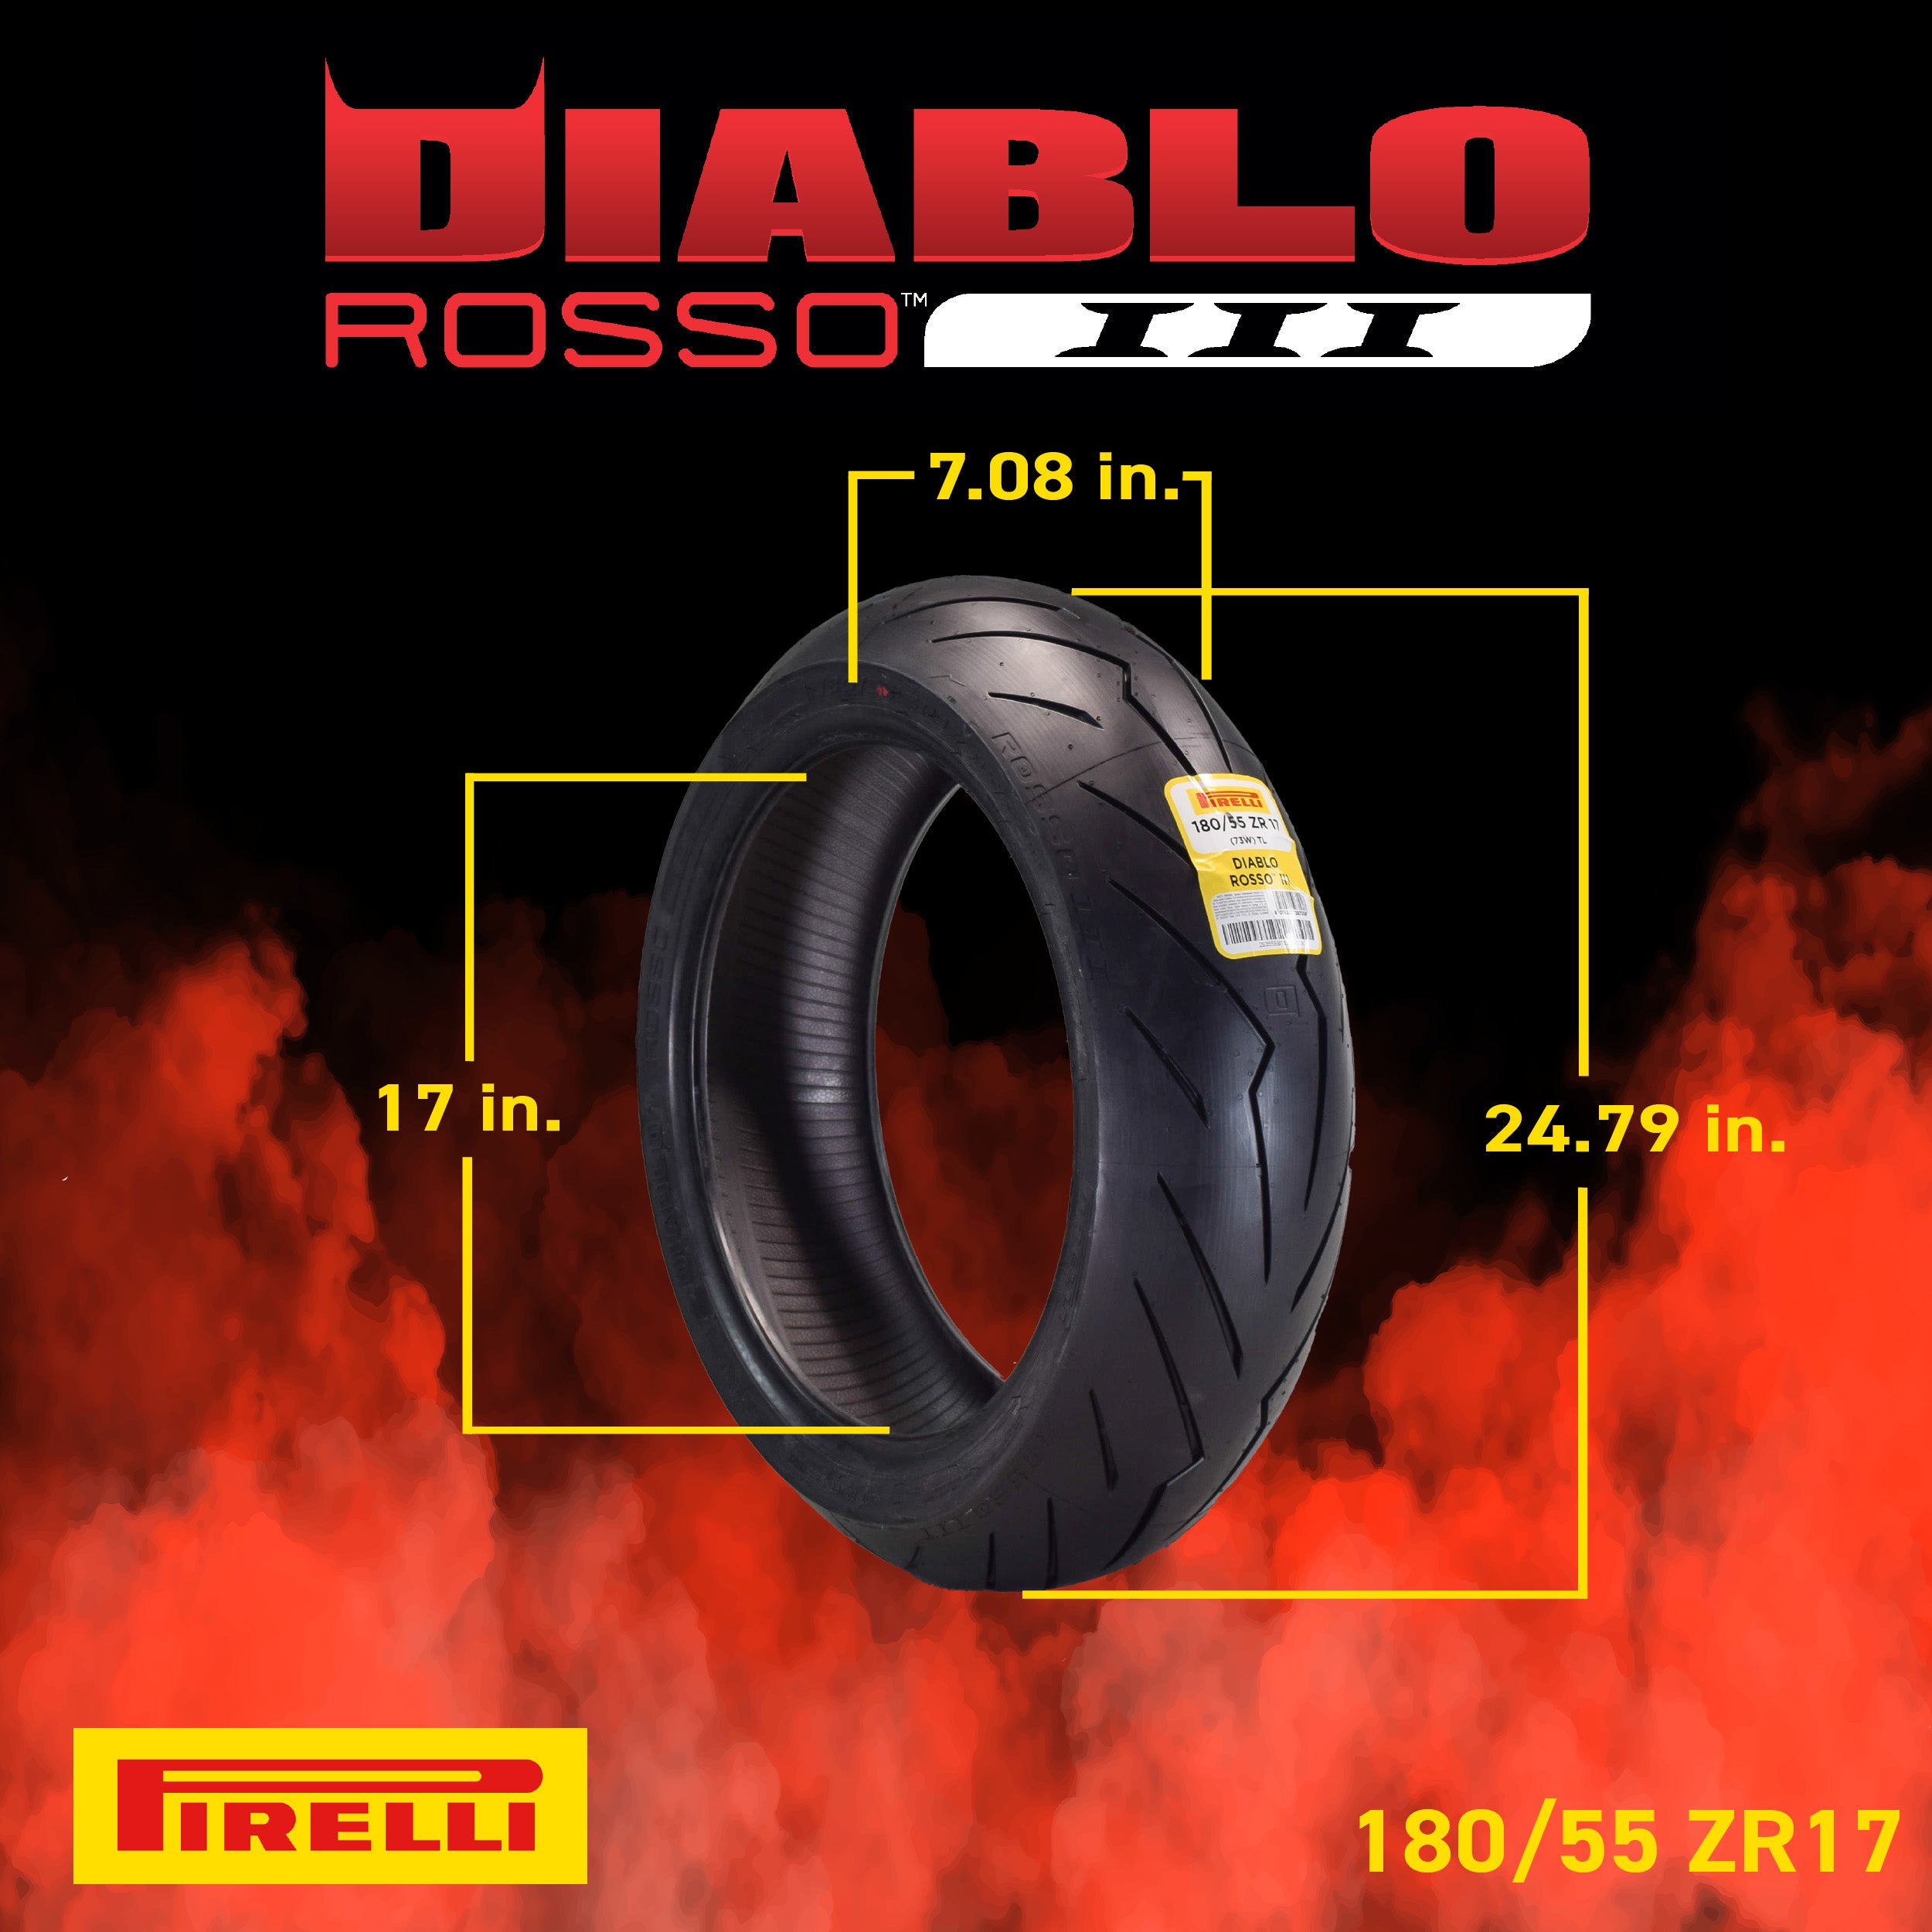 Pirelli Diablo Rosso III 120/60ZR17 180/55ZR17 Front & Rear Motorcycle Tire Set